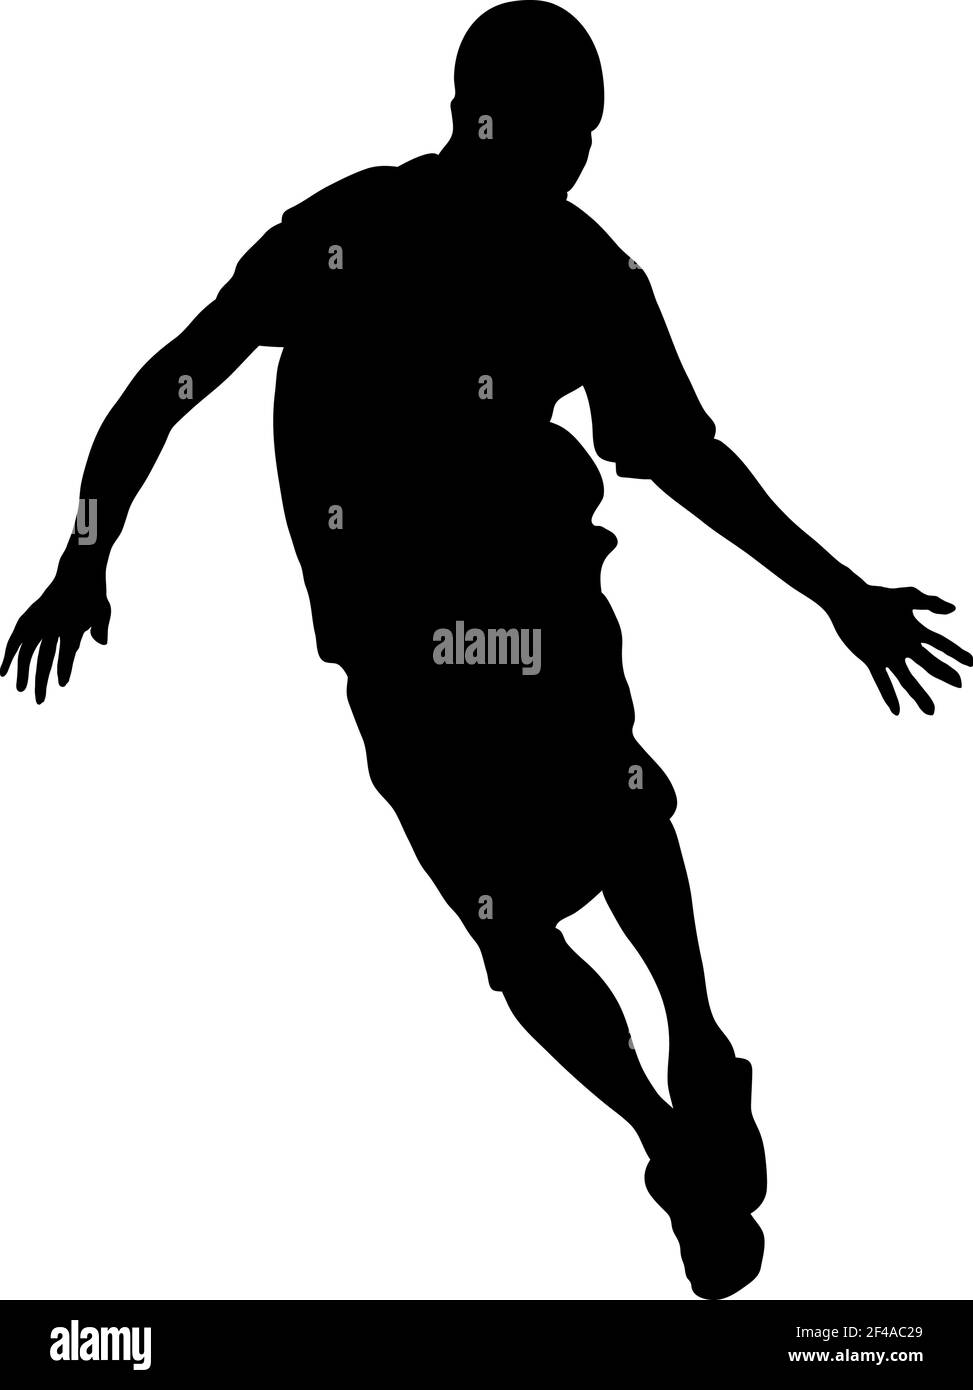 Silhouette de joueur de basket-ball. Design noir lisse et propre. Illustration vectorielle. Illustration de Vecteur